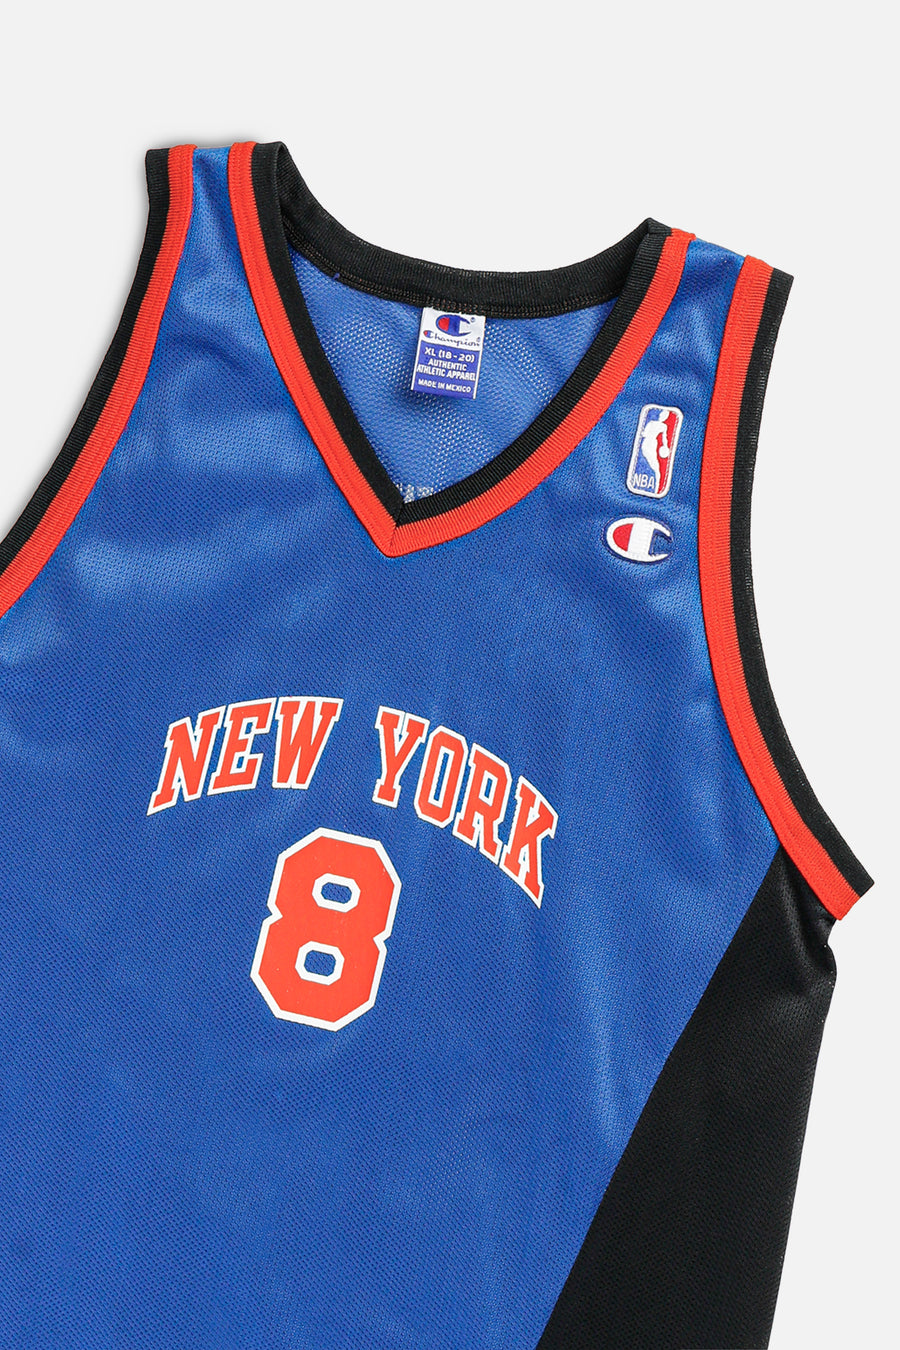 Vintage NY Knicks NBA Jersey - Women's M